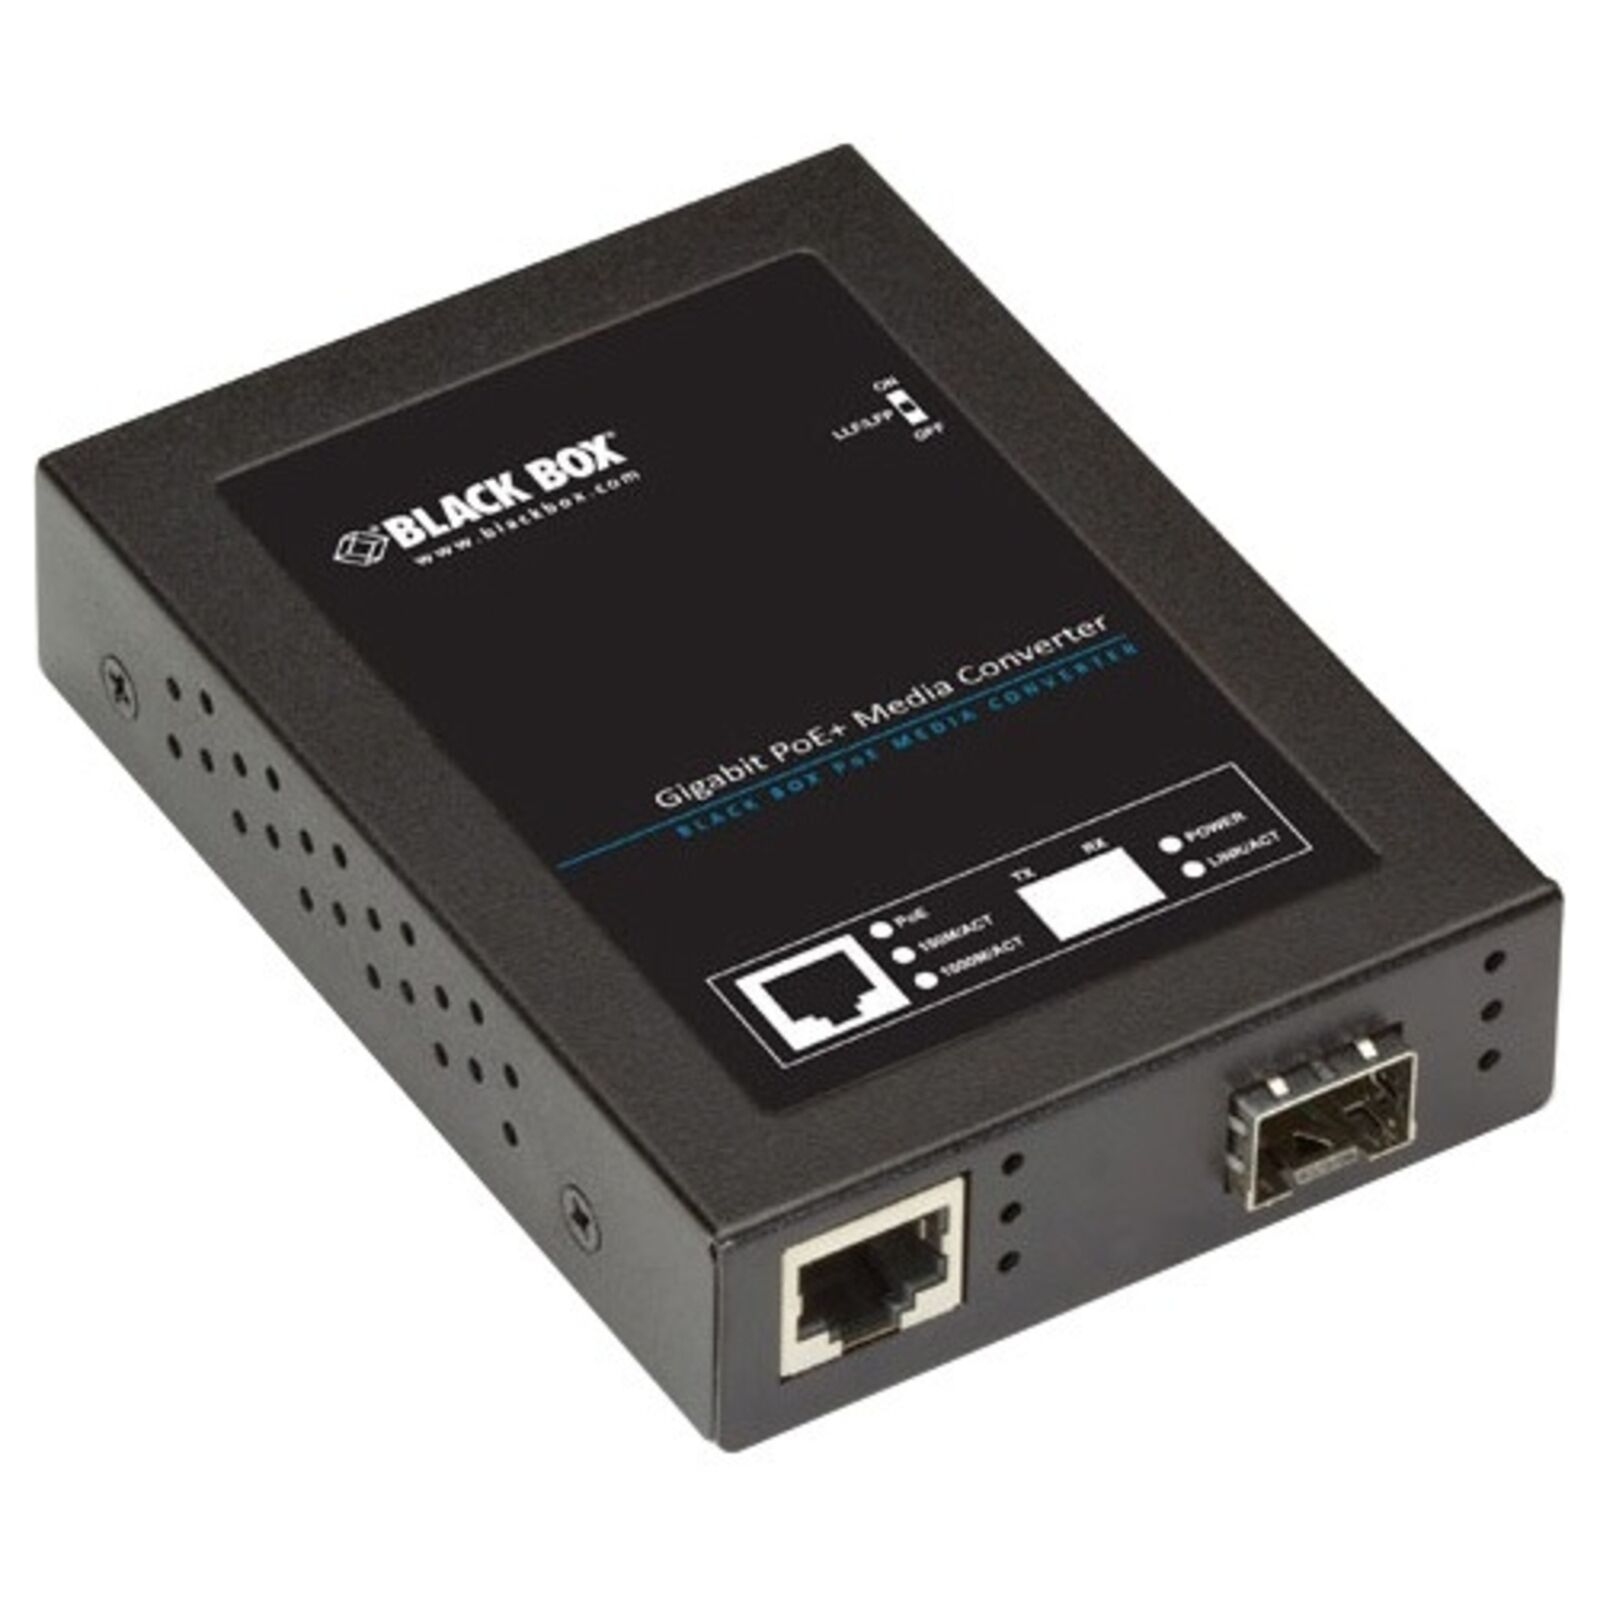 Black Box Network - LPS535A-SFP - Black Box Gb ETH PoE+ MED CONV